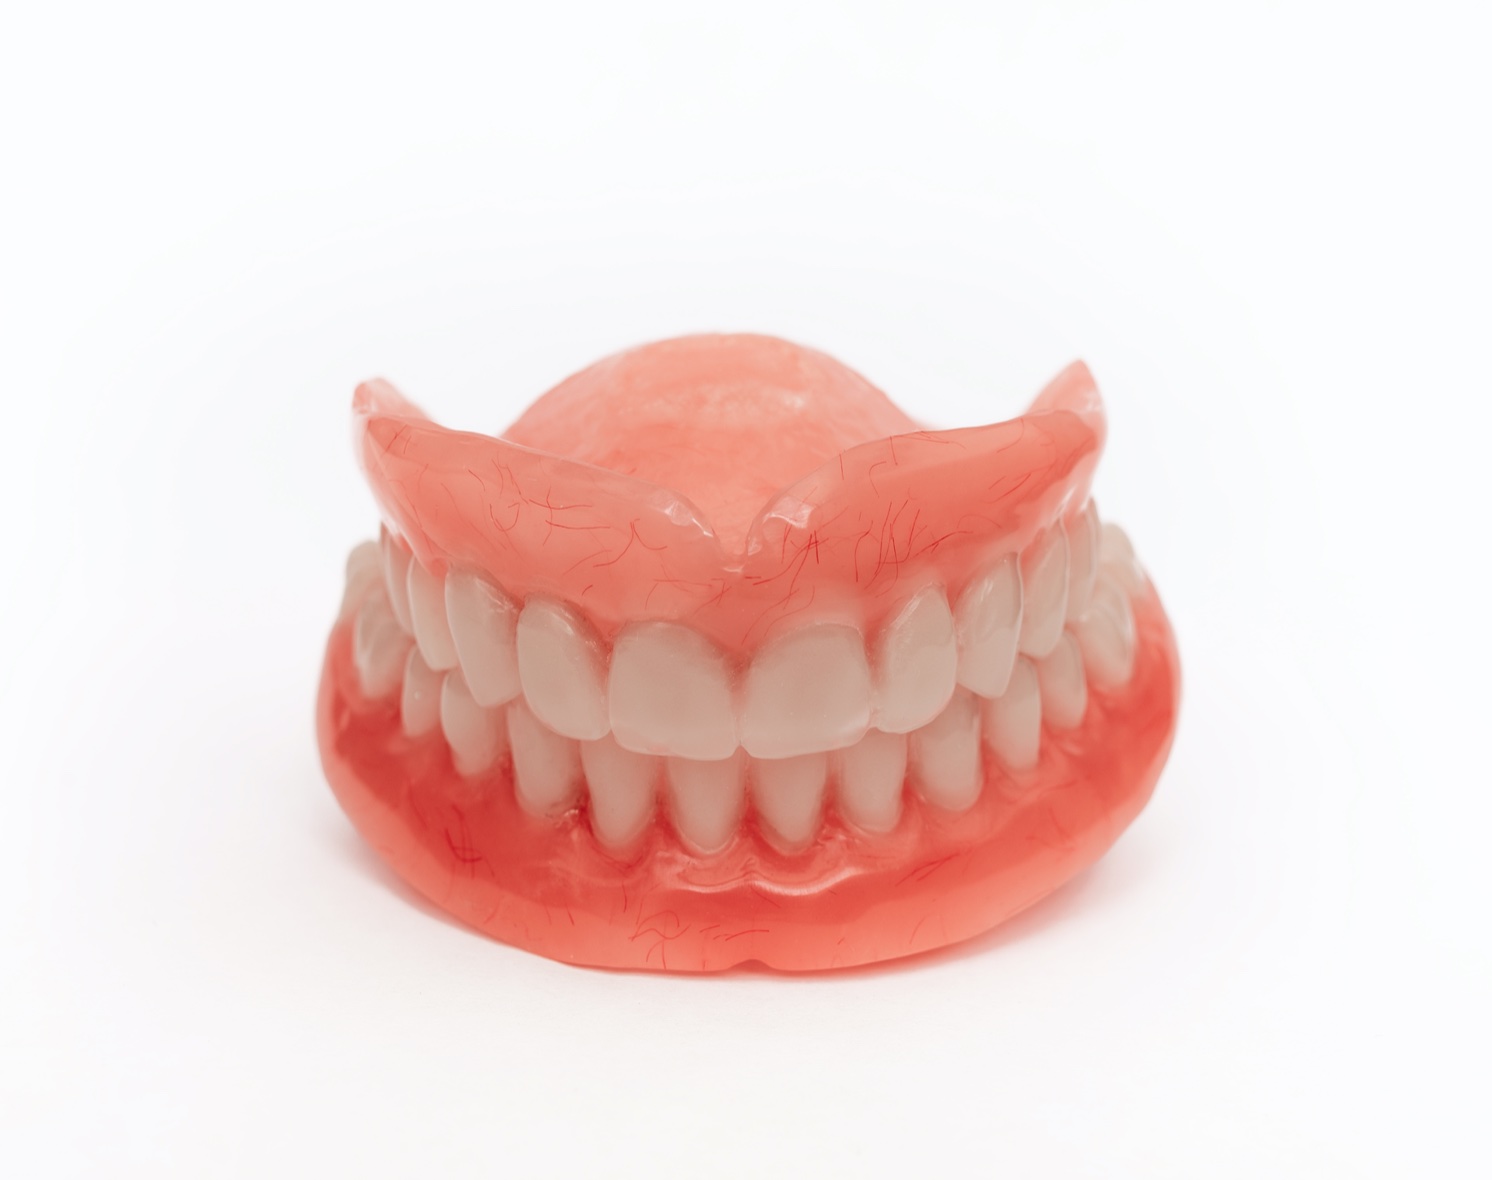 Che Cosa Causa la Perdita dei Denti?